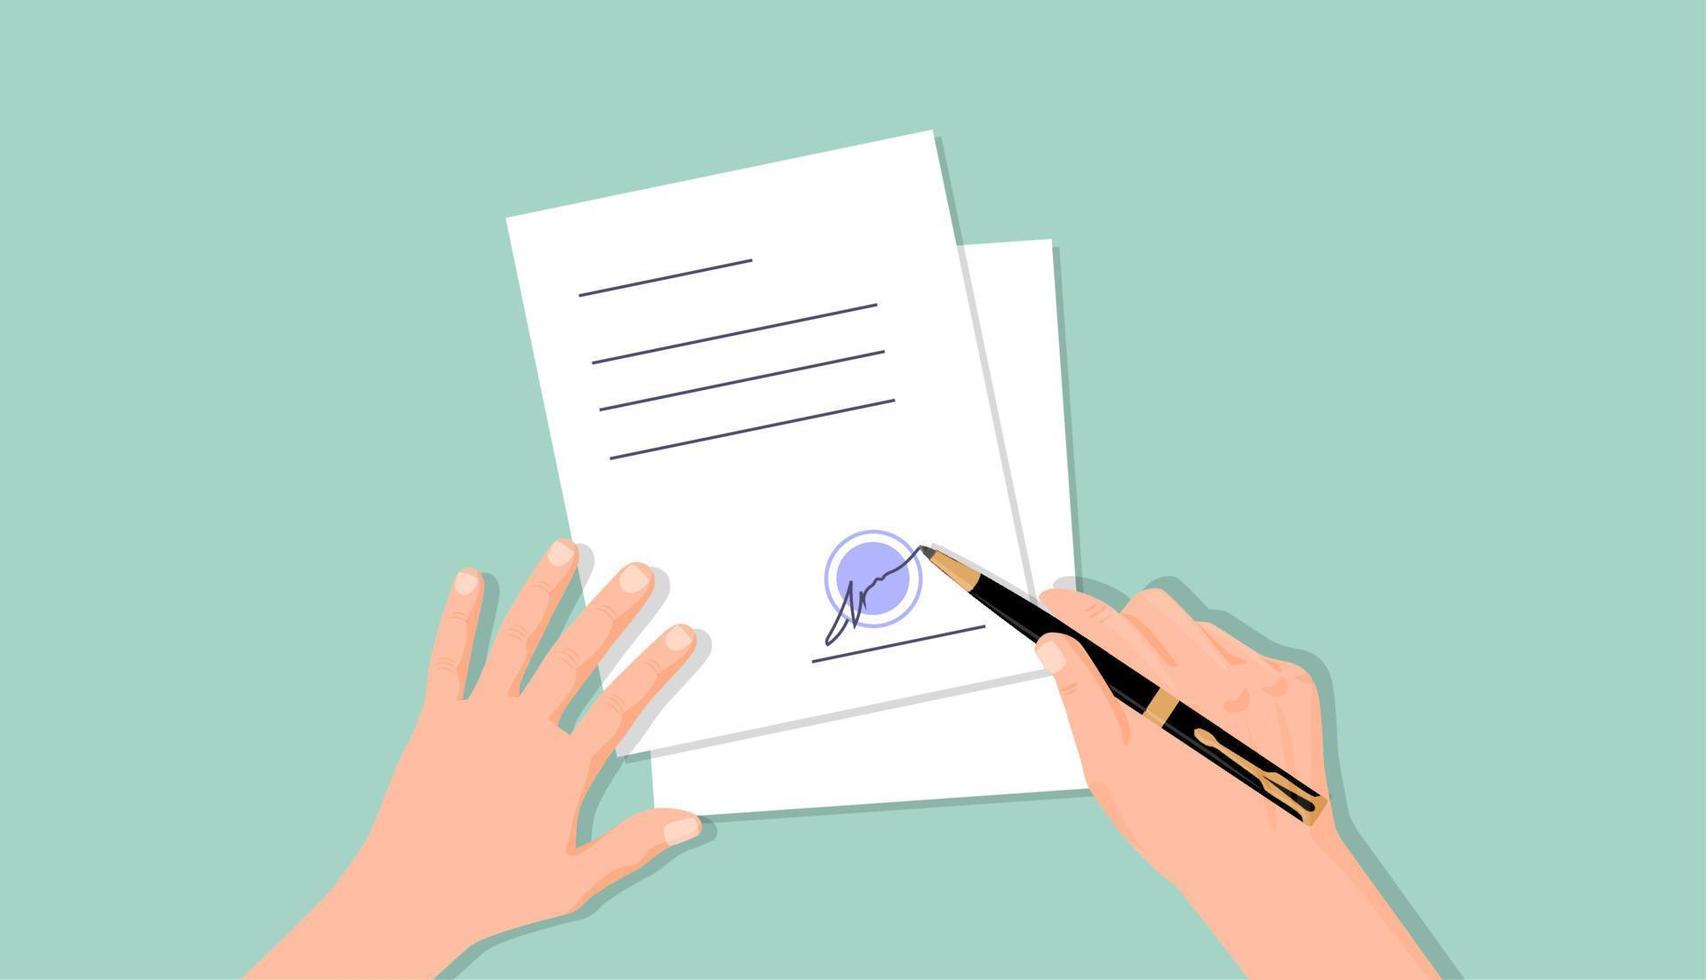 händer sätta signatur på dokumentera. dokumentera arbete avtal officiellt auktoriserad signatur och blå sigill, symbol kontrakt sysselsättning och finansiell partnerskap företags- lån vektor erbjudande.